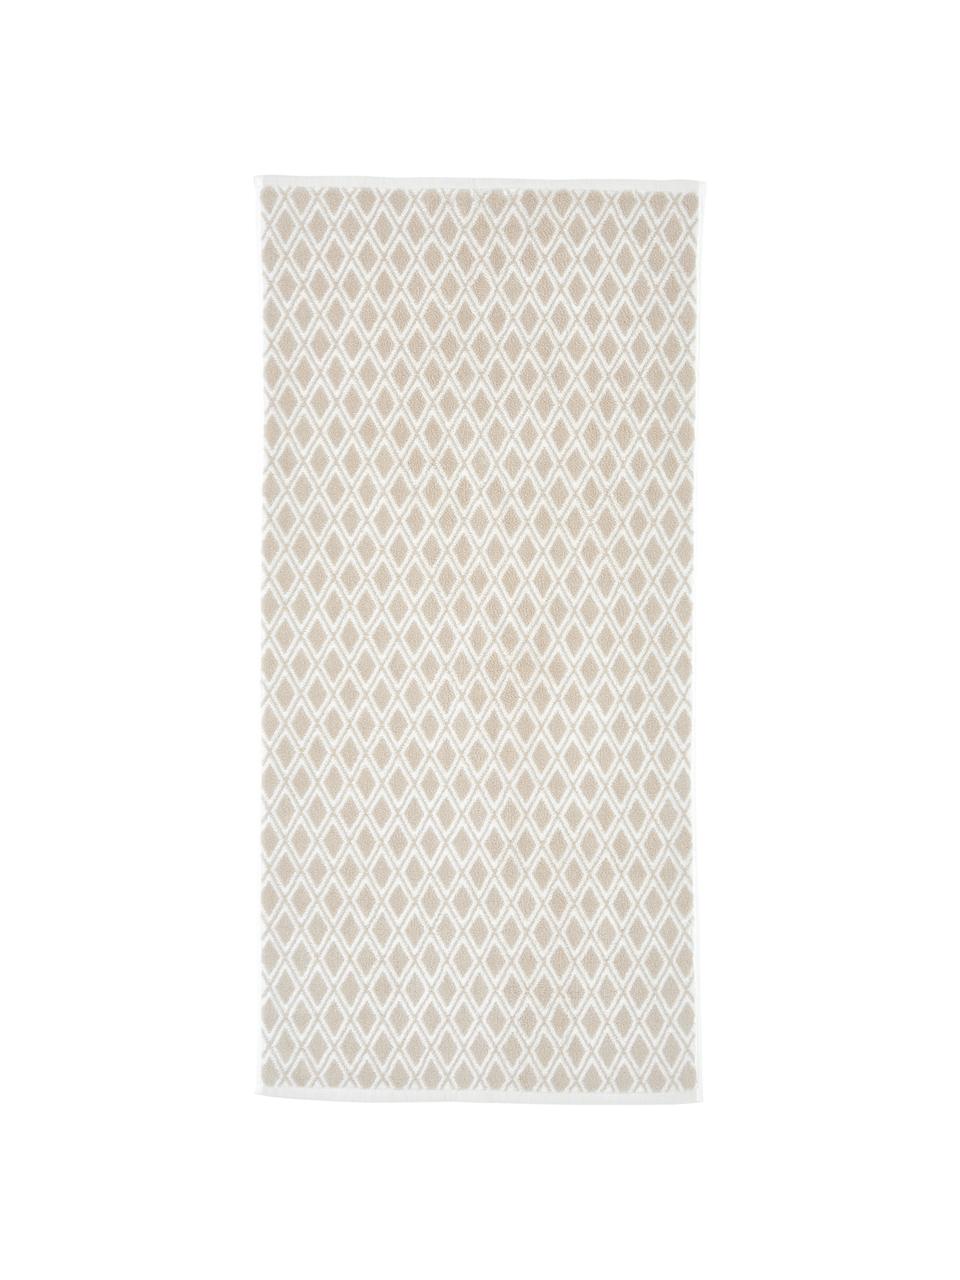 Wende-Handtuch Ava mit grafischem Muster, Sandfarben, Cremeweiss, Handtuch, B 50 x L 100 cm, 2 Stück